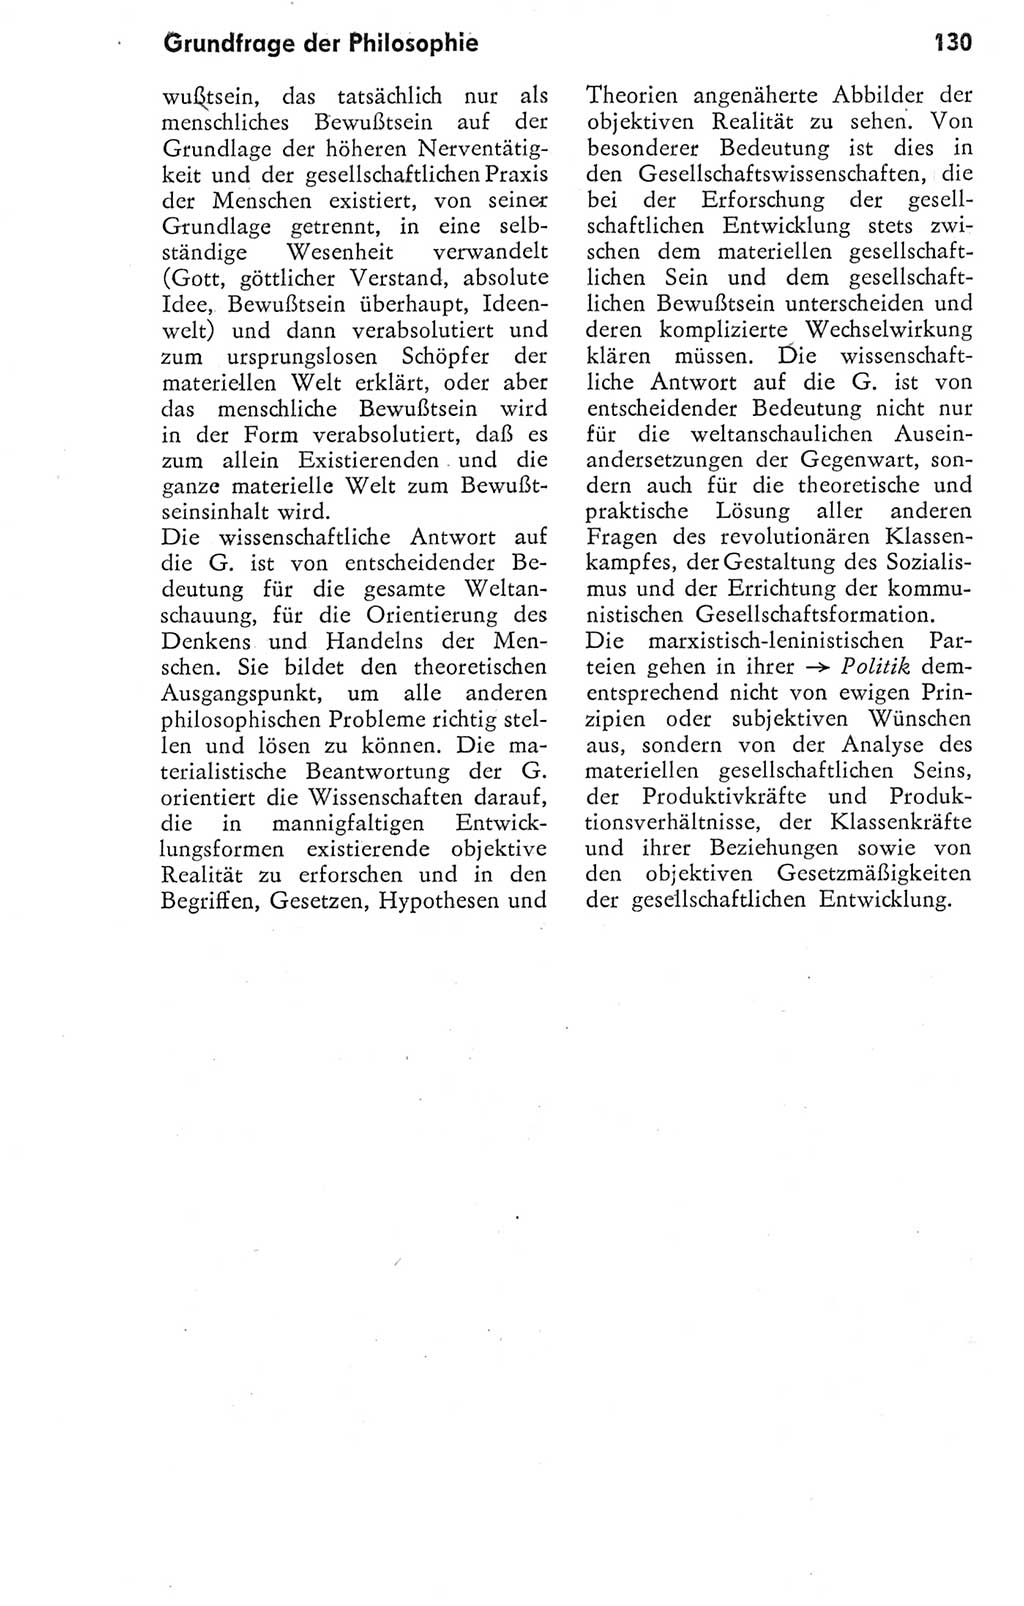 Kleines Wörterbuch der marxistisch-leninistischen Philosophie [Deutsche Demokratische Republik (DDR)] 1974, Seite 130 (Kl. Wb. ML Phil. DDR 1974, S. 130)